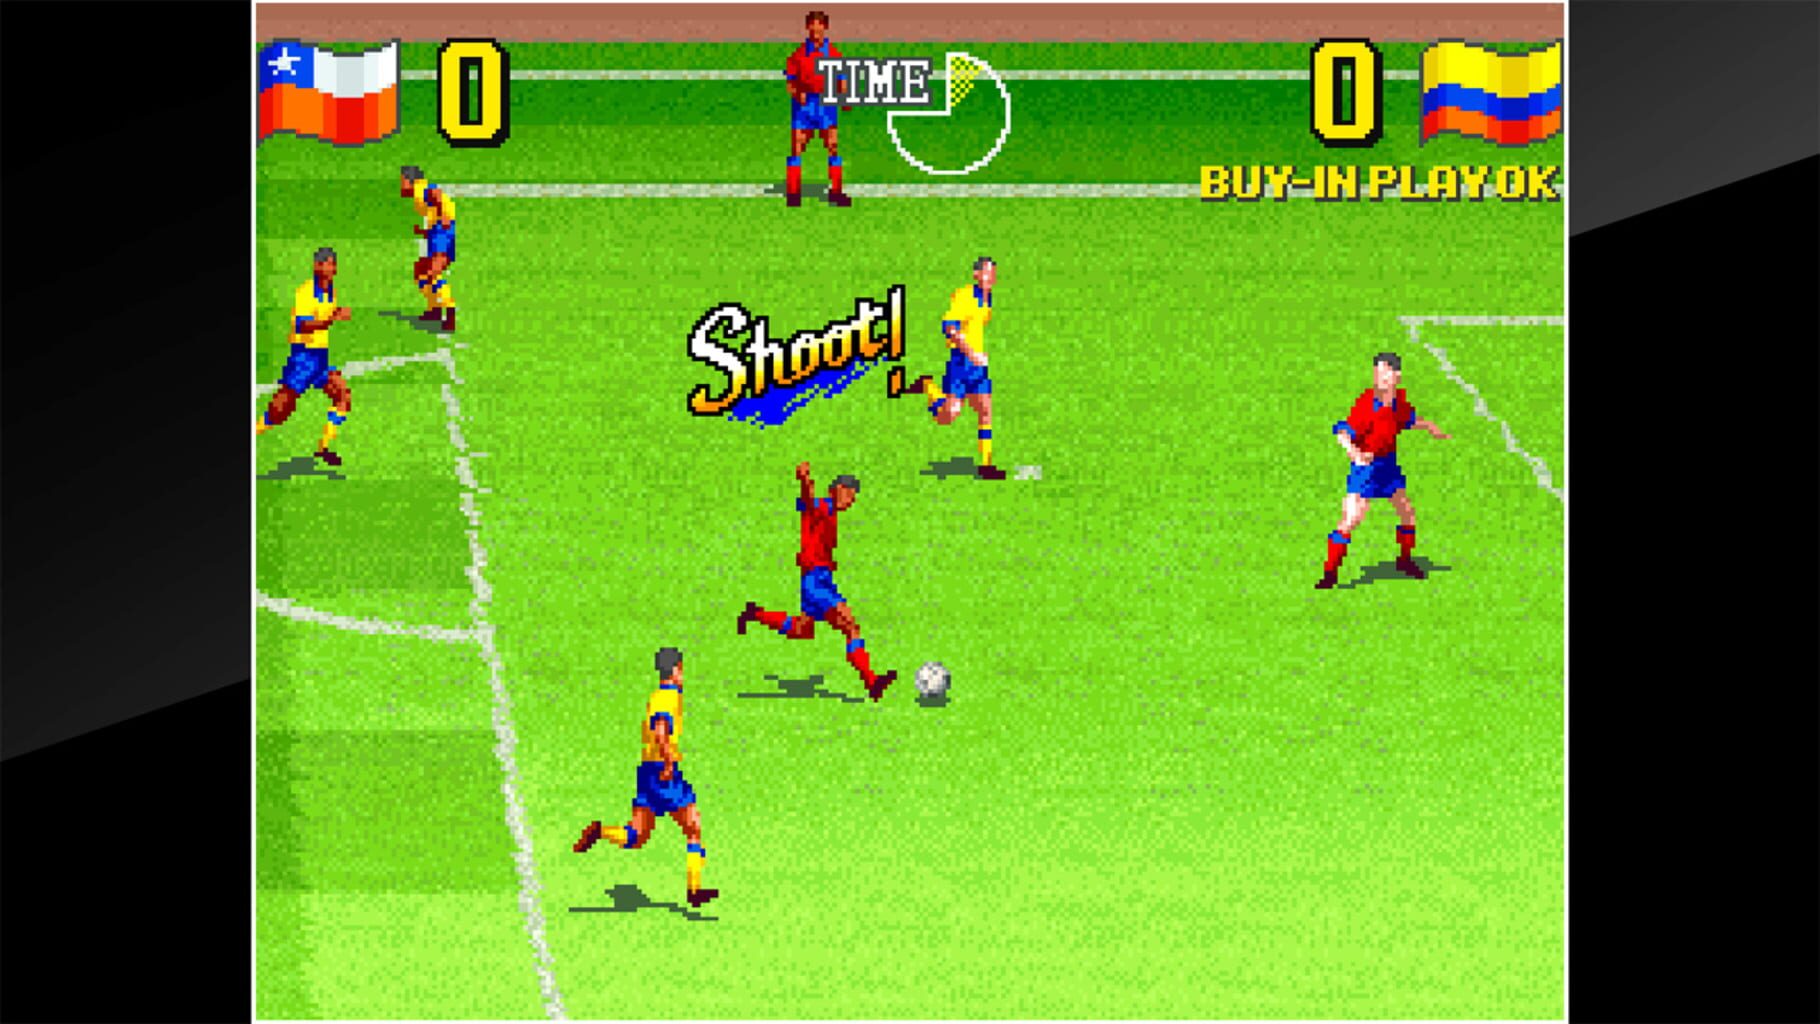 ACA Neo Geo: Super Sidekicks 3 - The Next Glory screenshot